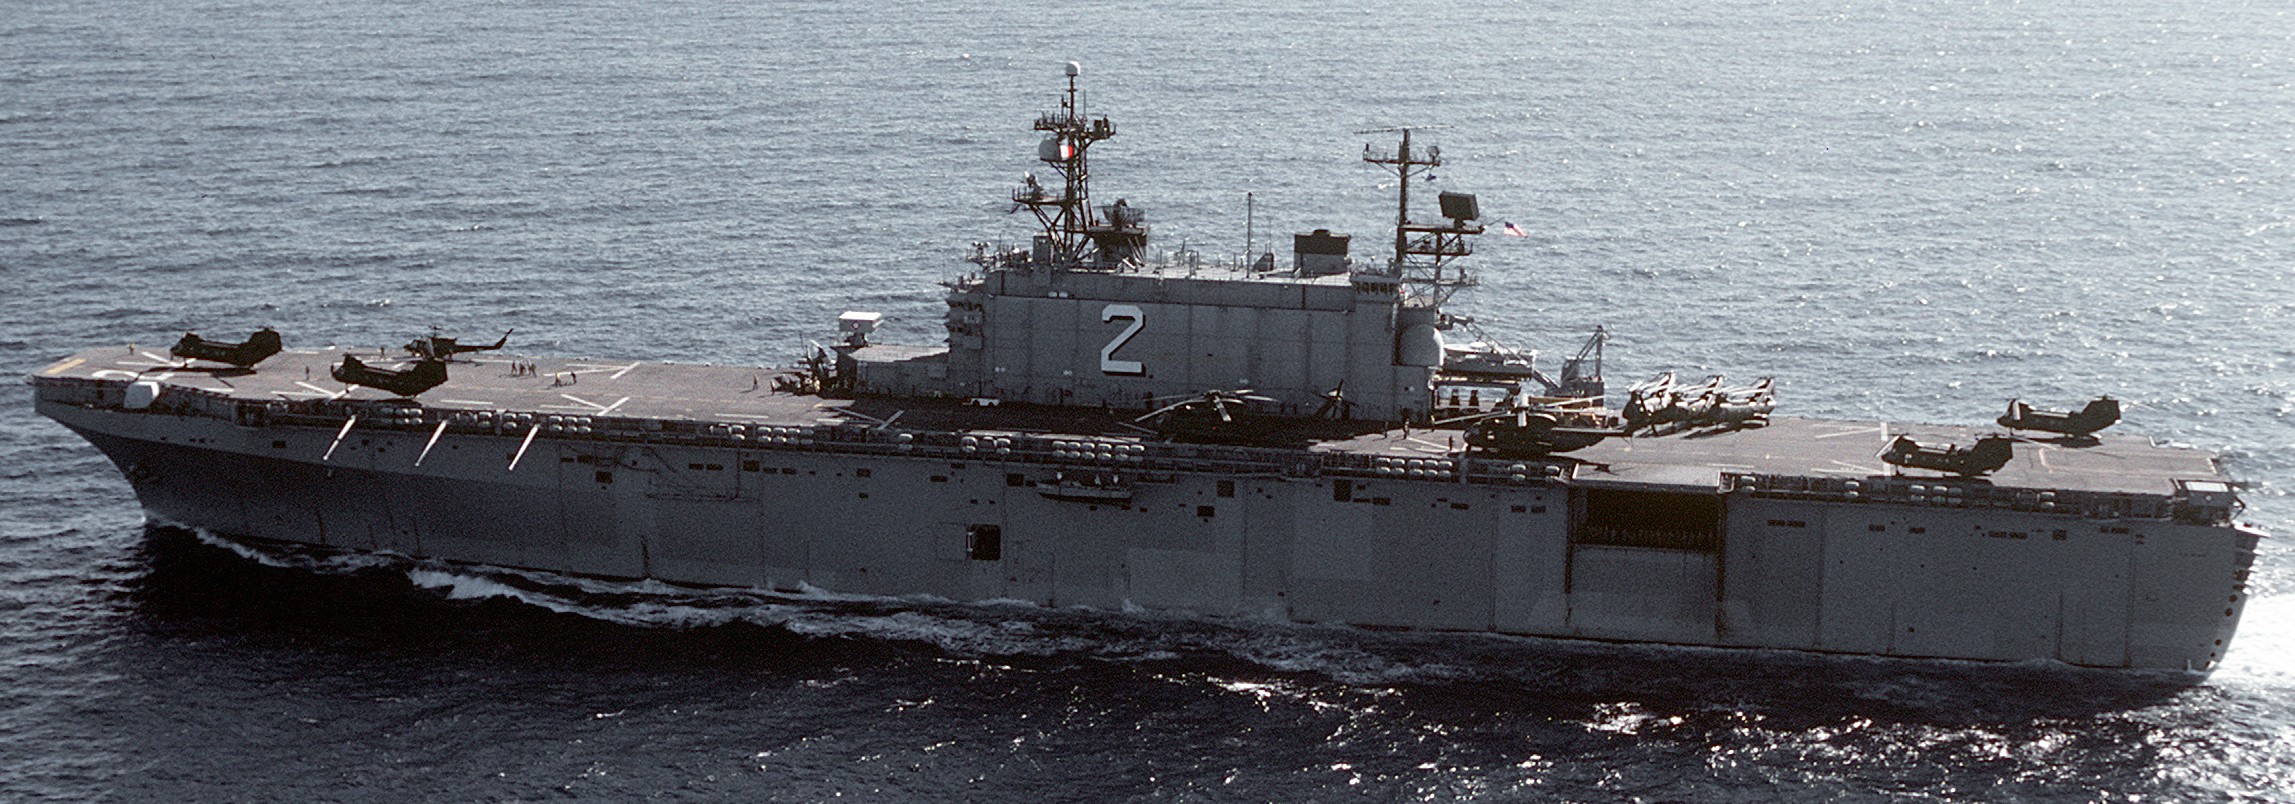 lha-2 uss saipan tarawa class amphibious assault ship us navy 32nd mau hmm-264 usmc exercise ocean venture 45